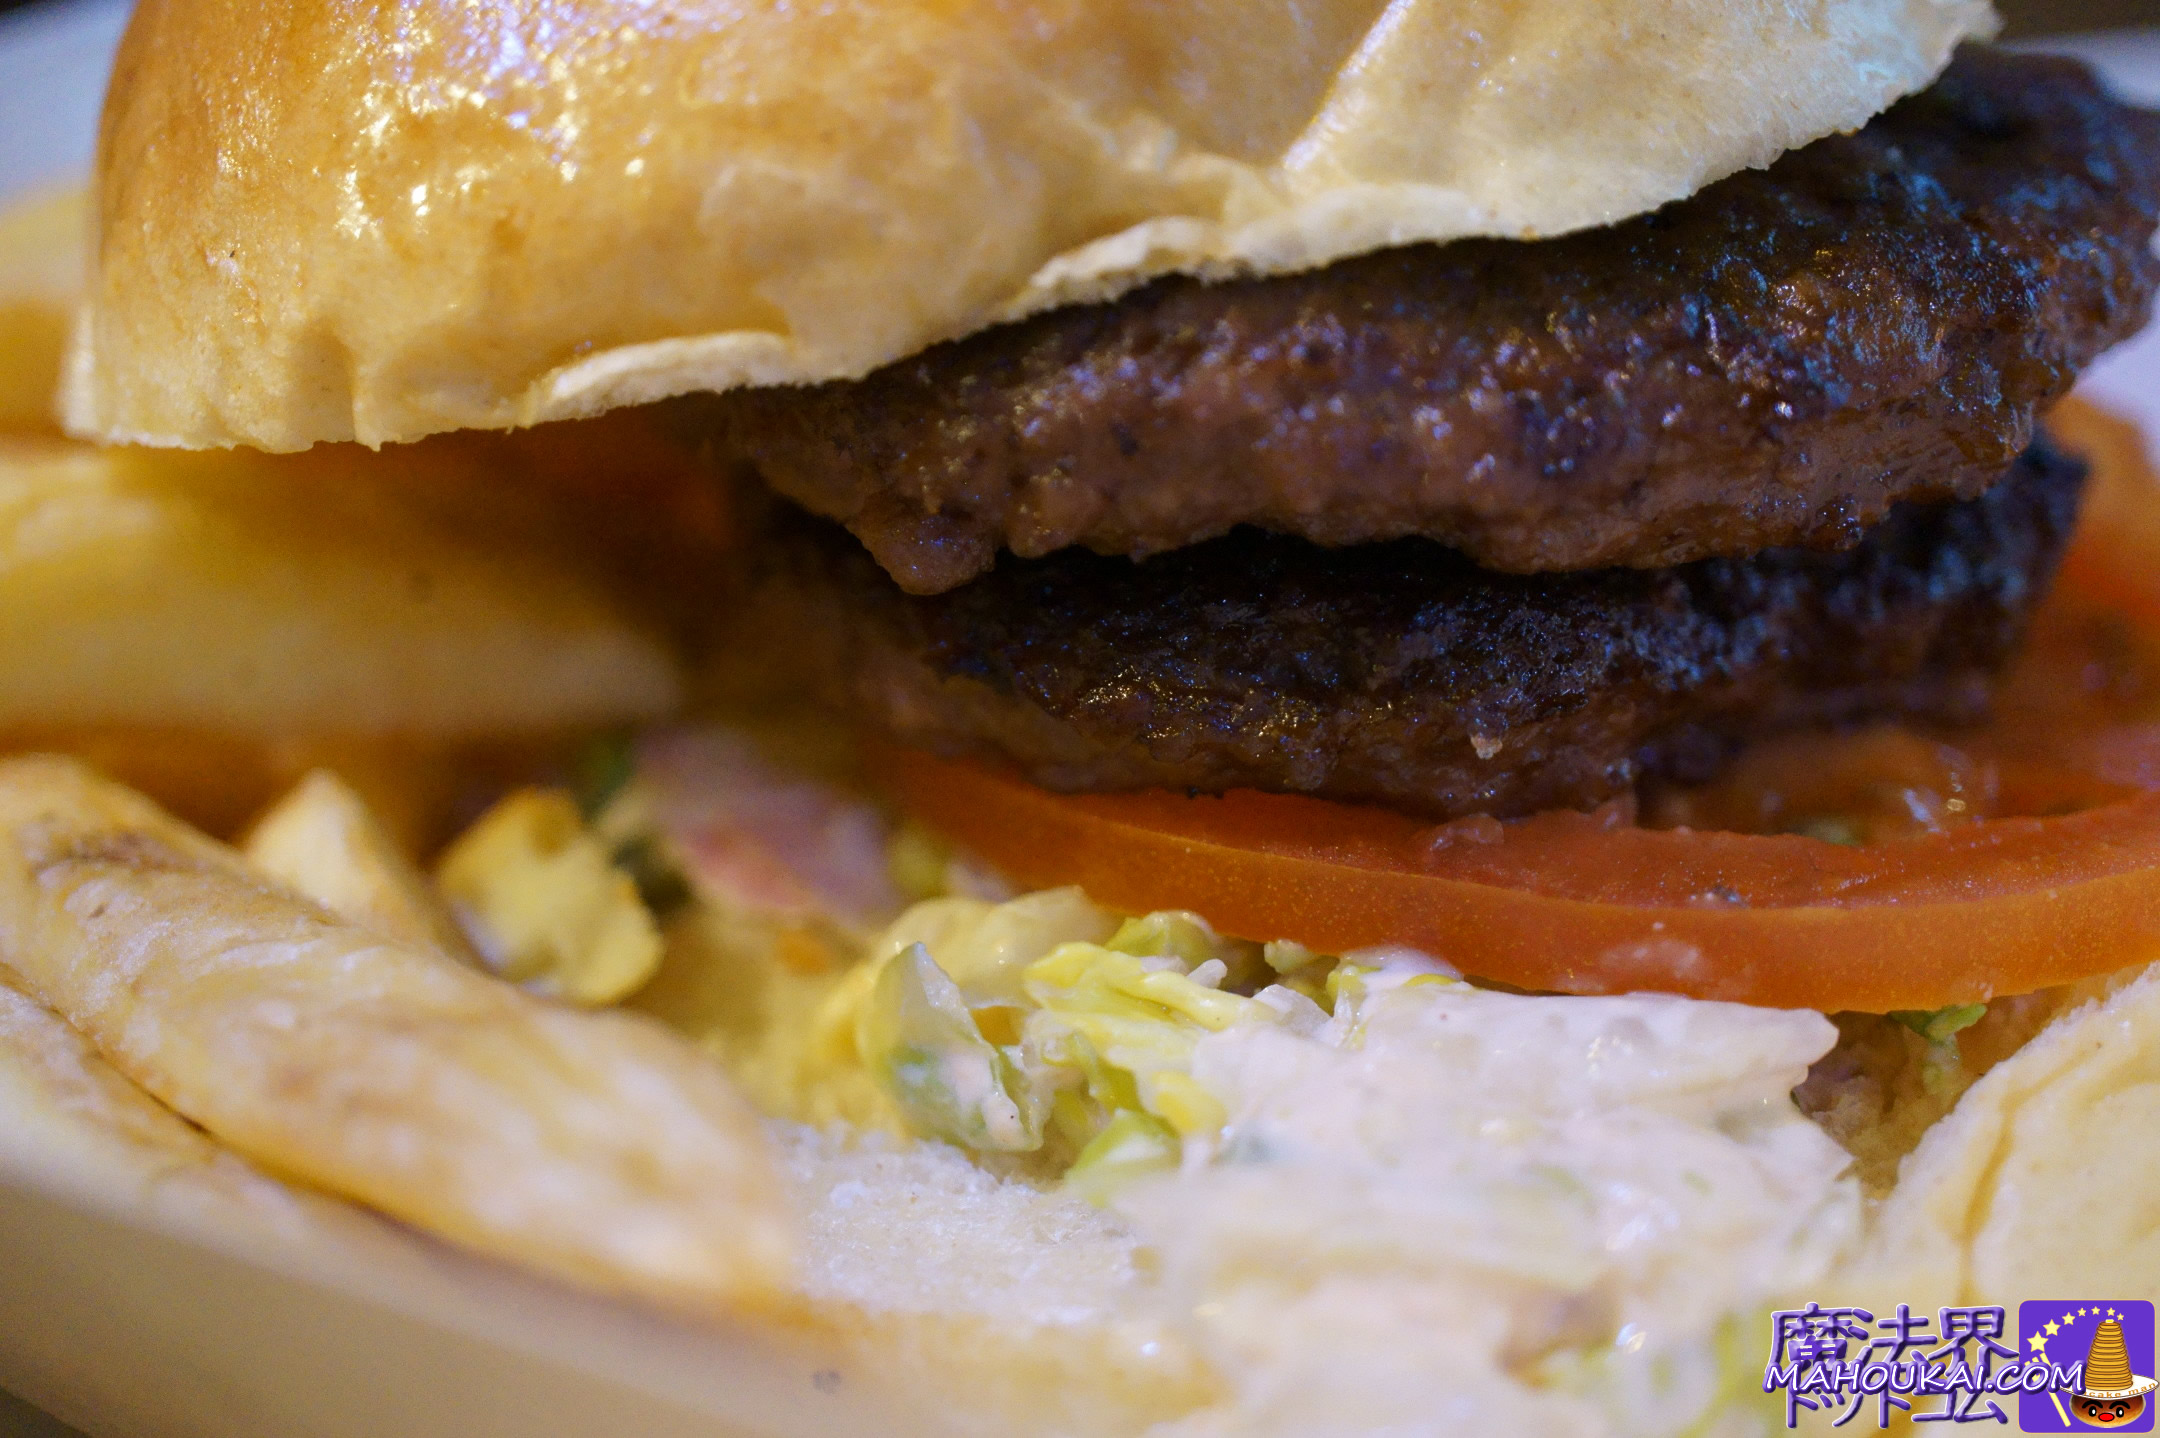 食べた物：バックロットバーガー＆チップス（Backlot Burger & Chips）ワーナー・ブラザース スタジオツアー3日目の食事